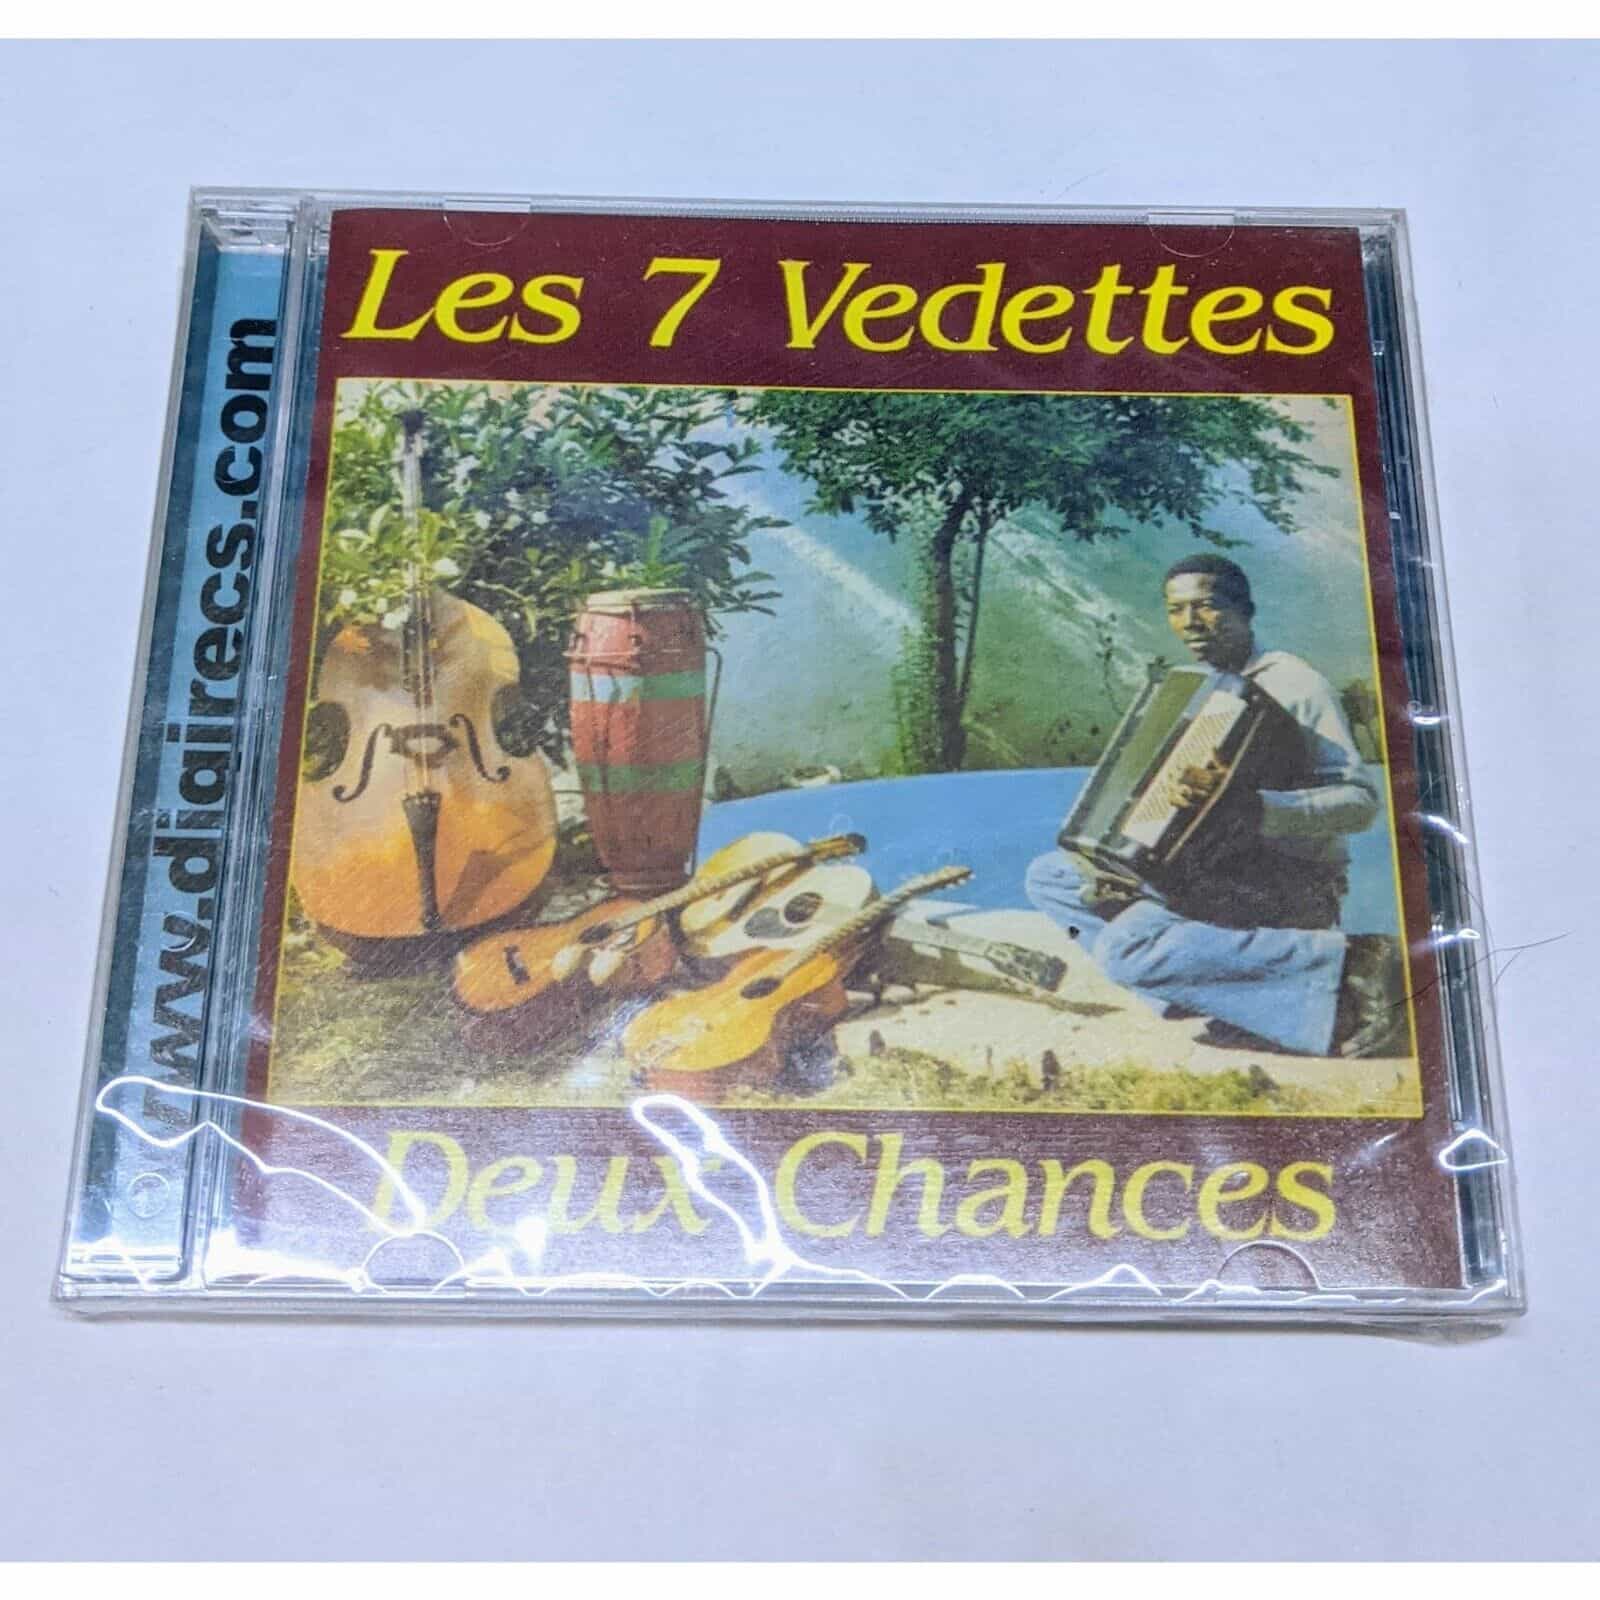 Deux Chances by Les 7 Vedettes Music Album